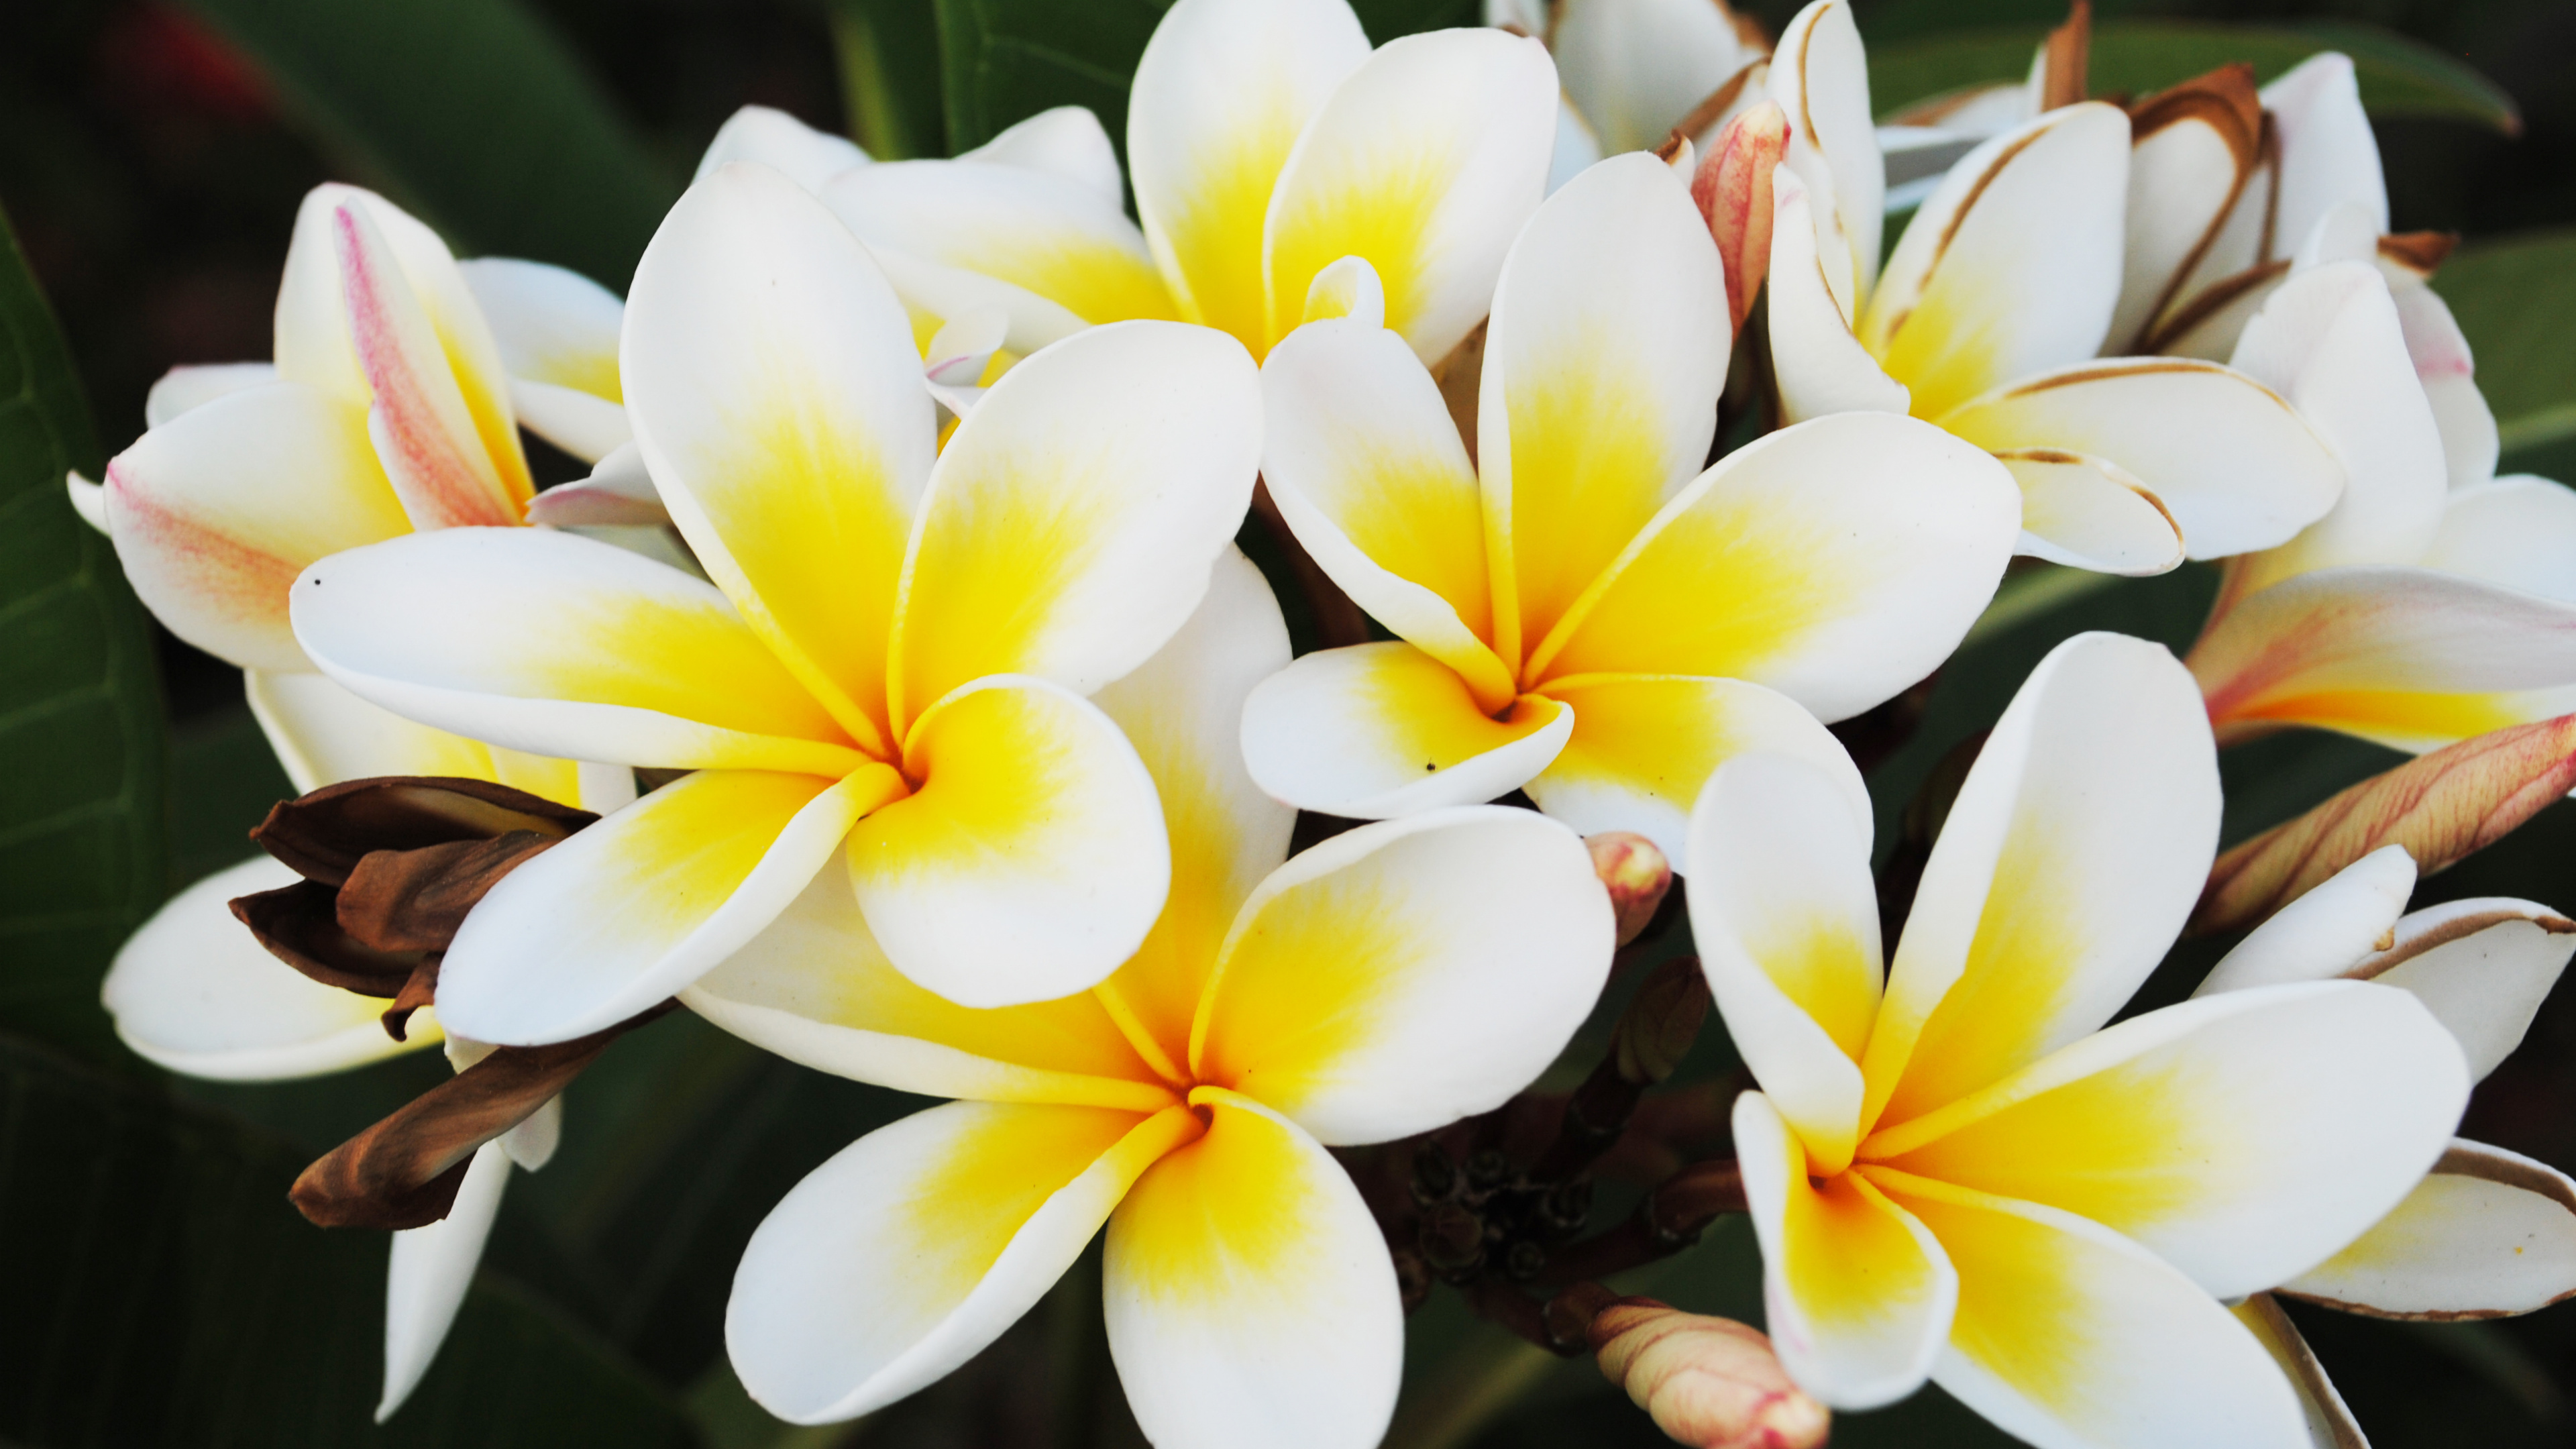 Flor Blanca y Amarilla en Fotografía de Cerca. Wallpaper in 3840x2160 Resolution